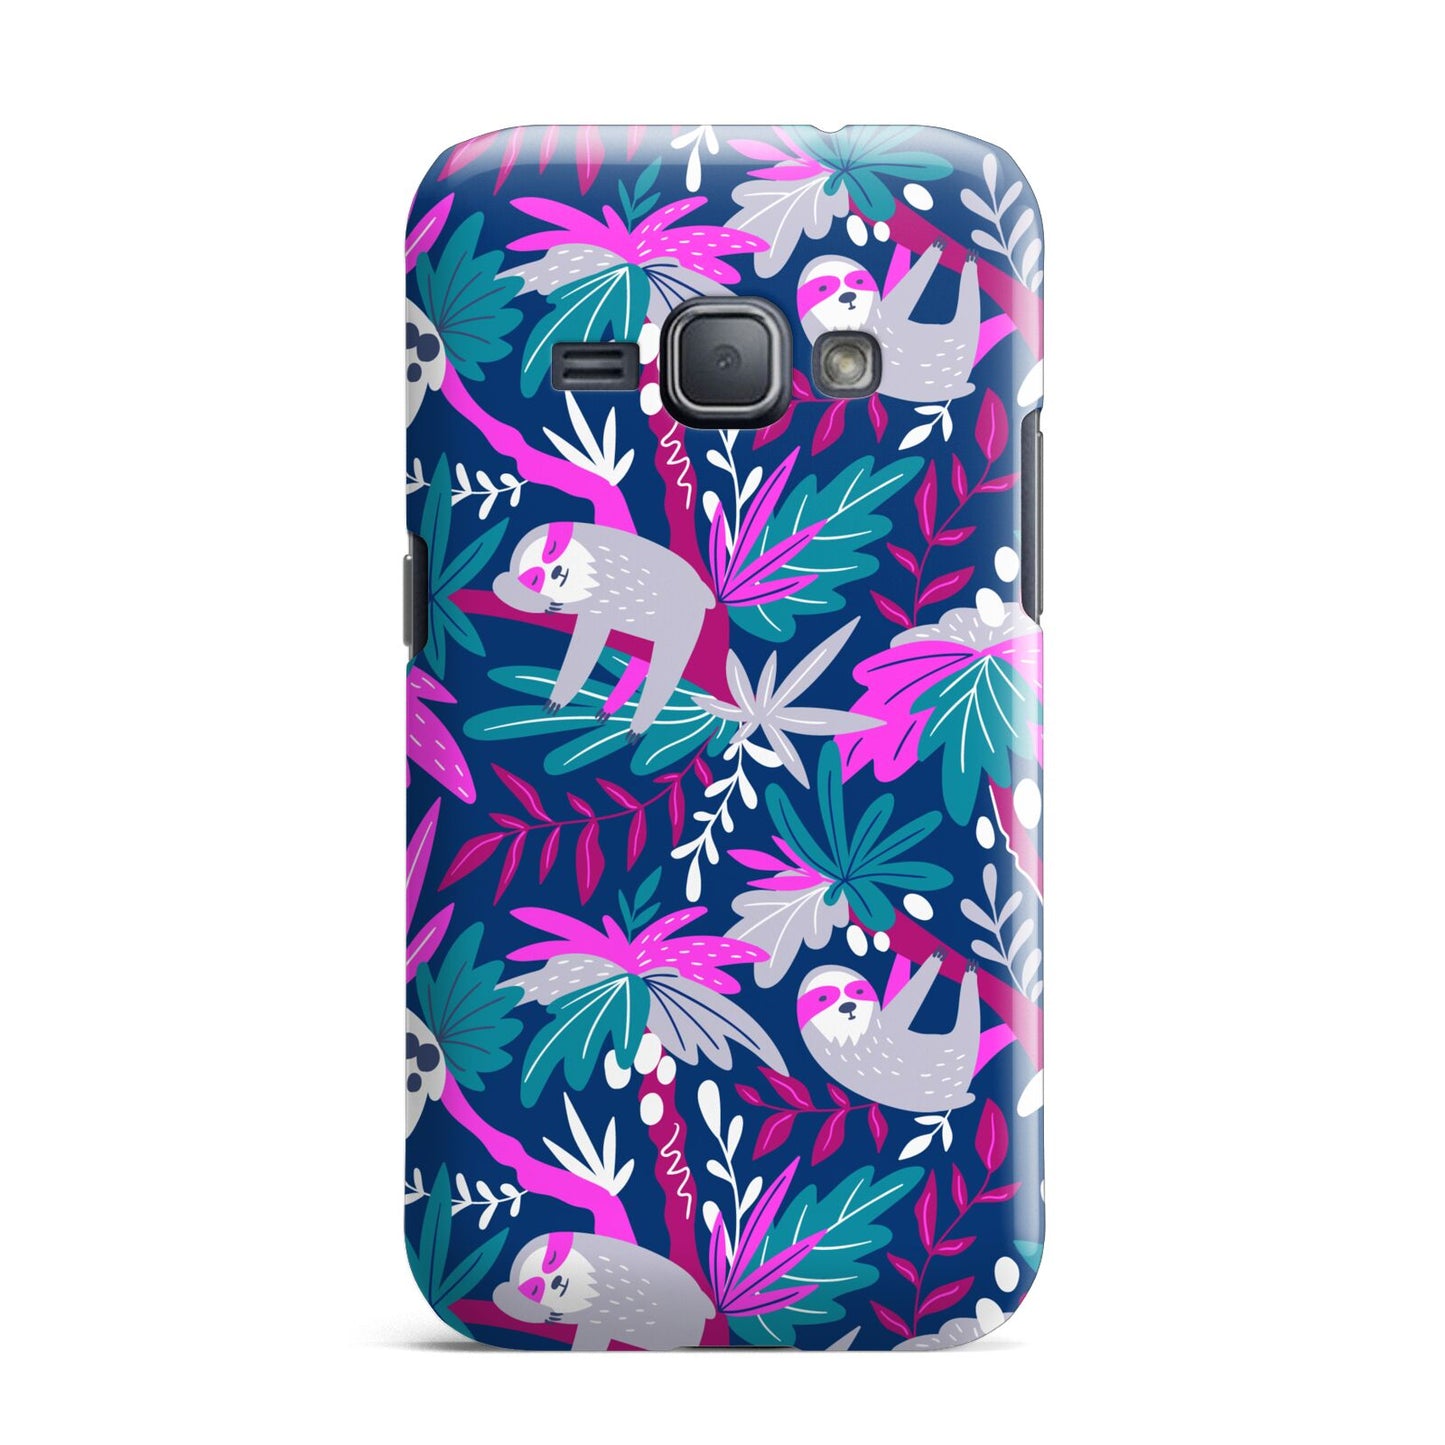 Sloth Samsung Galaxy J1 2016 Case